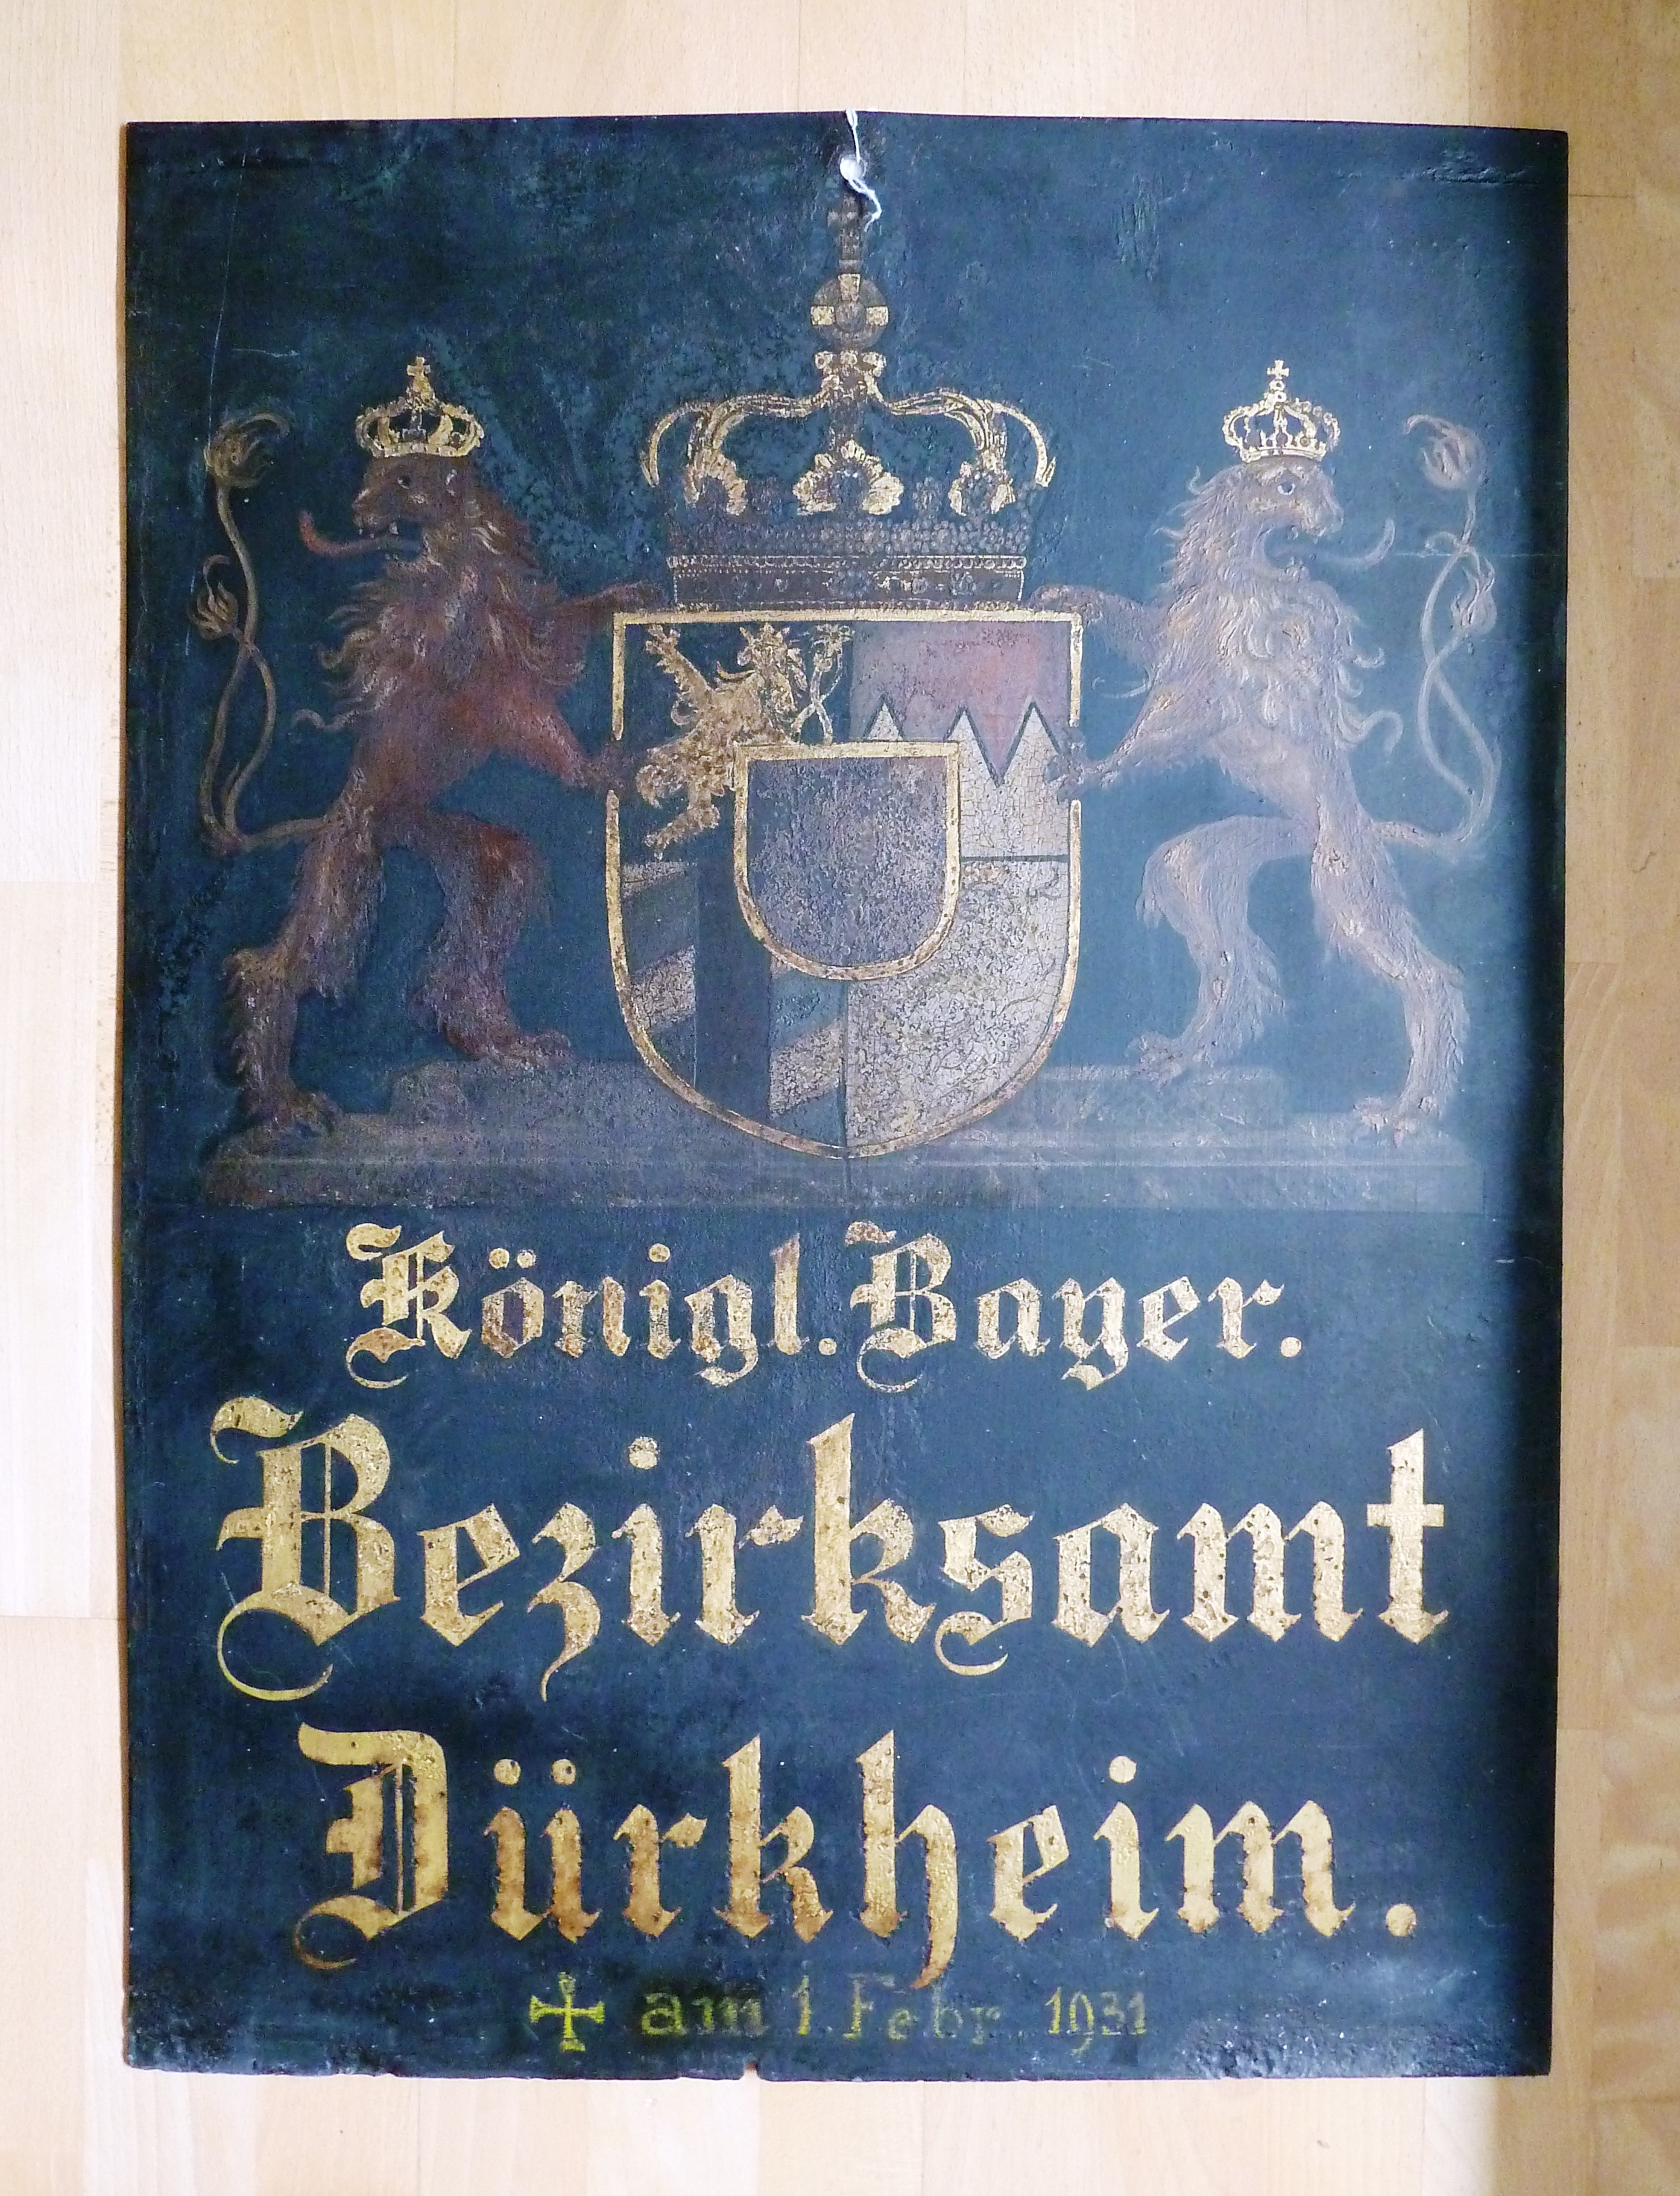 Schild mit Wappen und Schrift: "Königl. Bayer. Bezirksamt Dürkheim"; um 1900 (Stadtmuseum Bad Dürkheim, Museumsgesellschaft Bad Dürkheim e.V. CC BY-NC-SA)